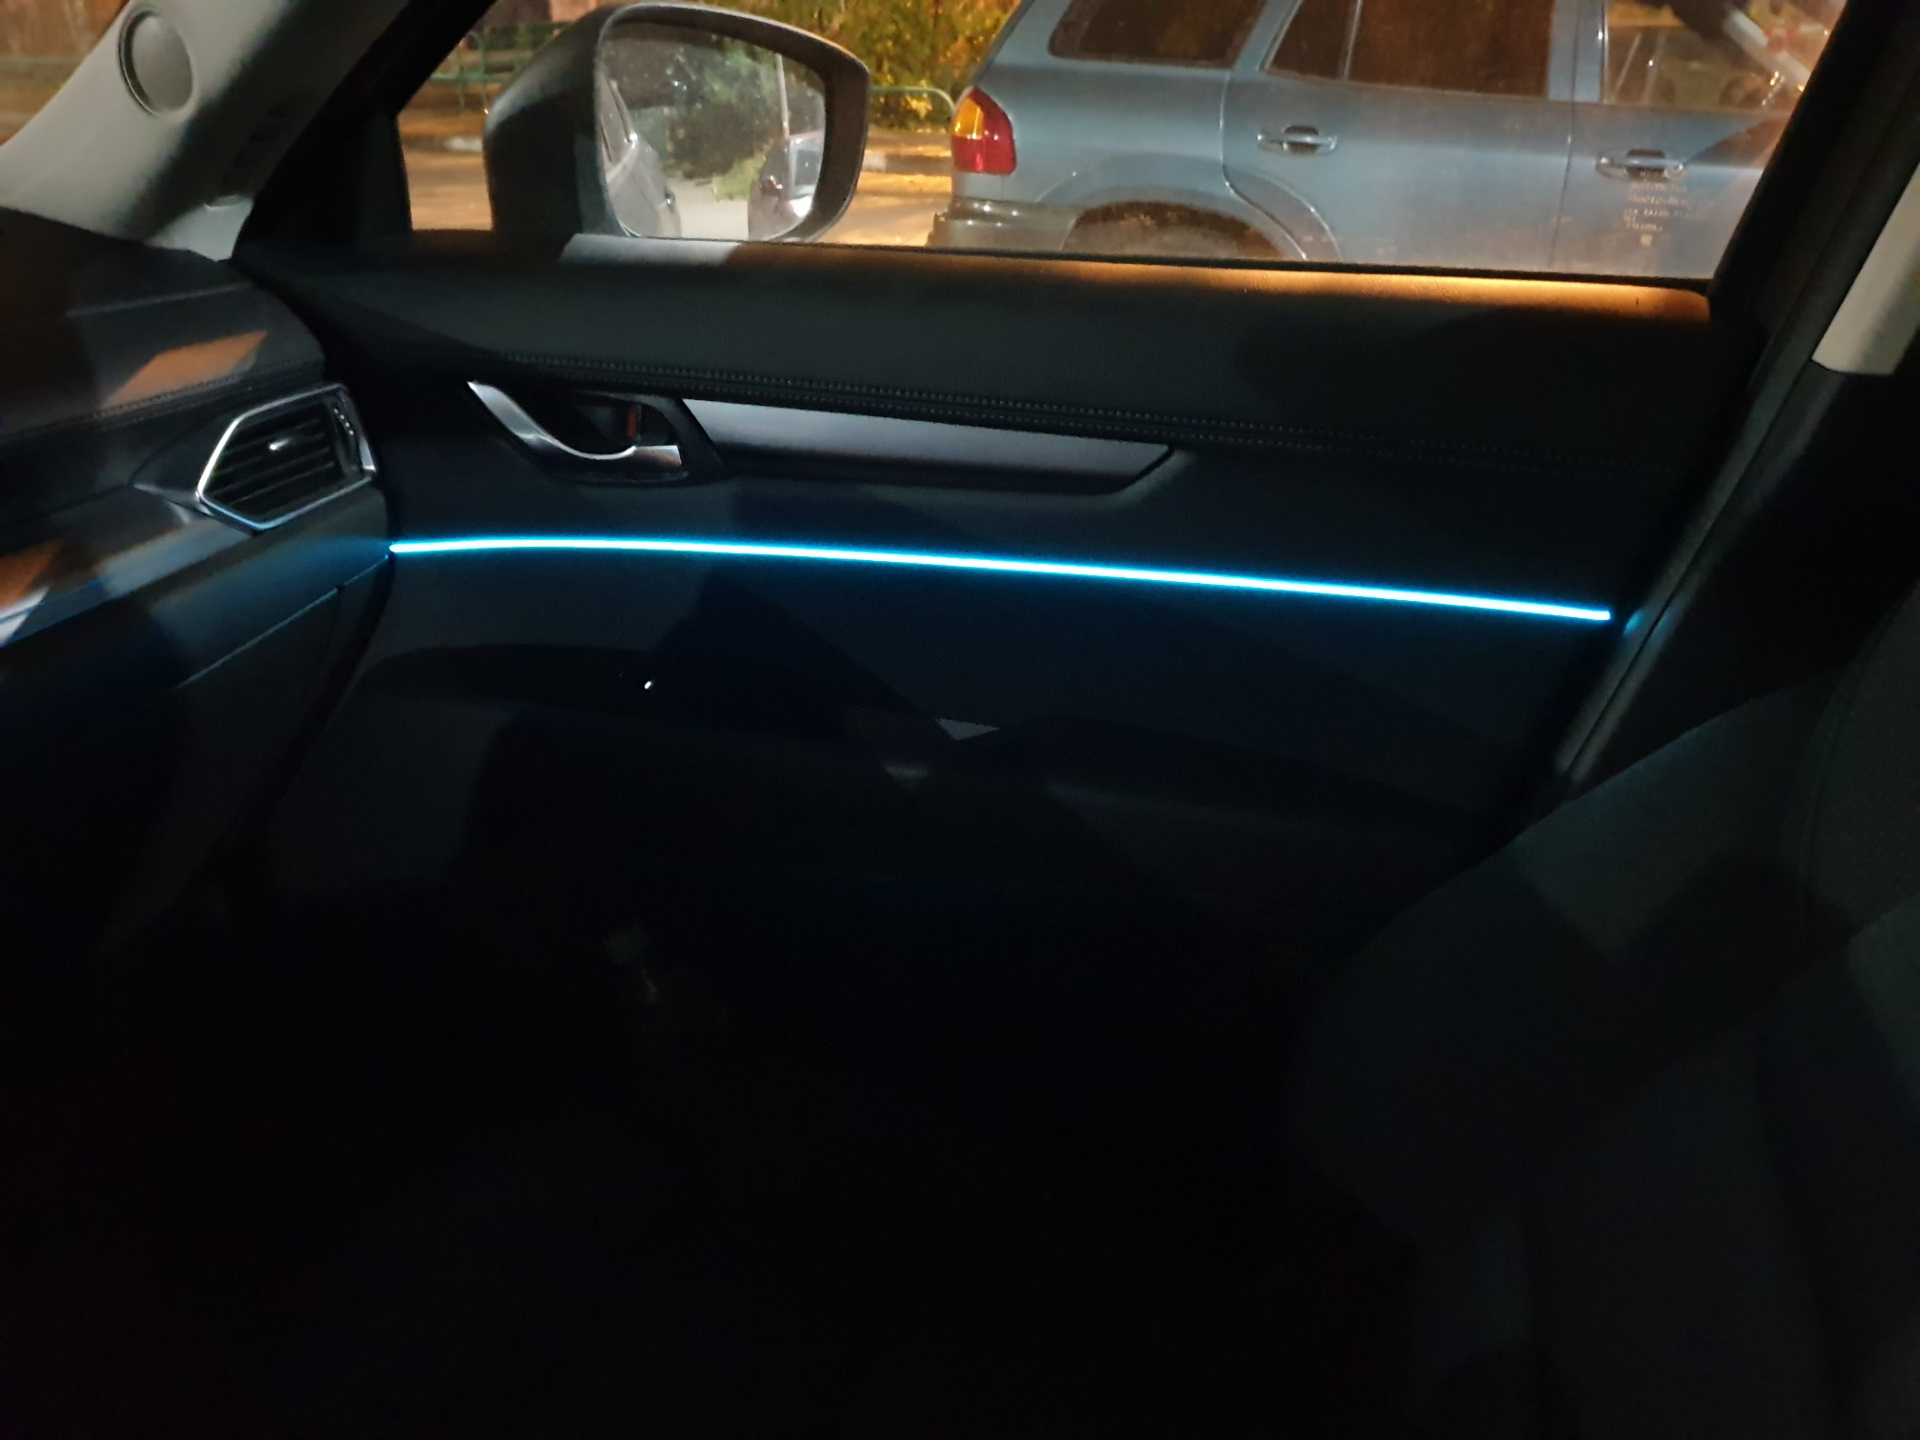 Подсветка мазда сх5. Подсветка салона Mazda CX-5. Подсветка Mazda CX 5. Подсветка салона Мазда cx5. Led подсветка салона Мазда CX-5.